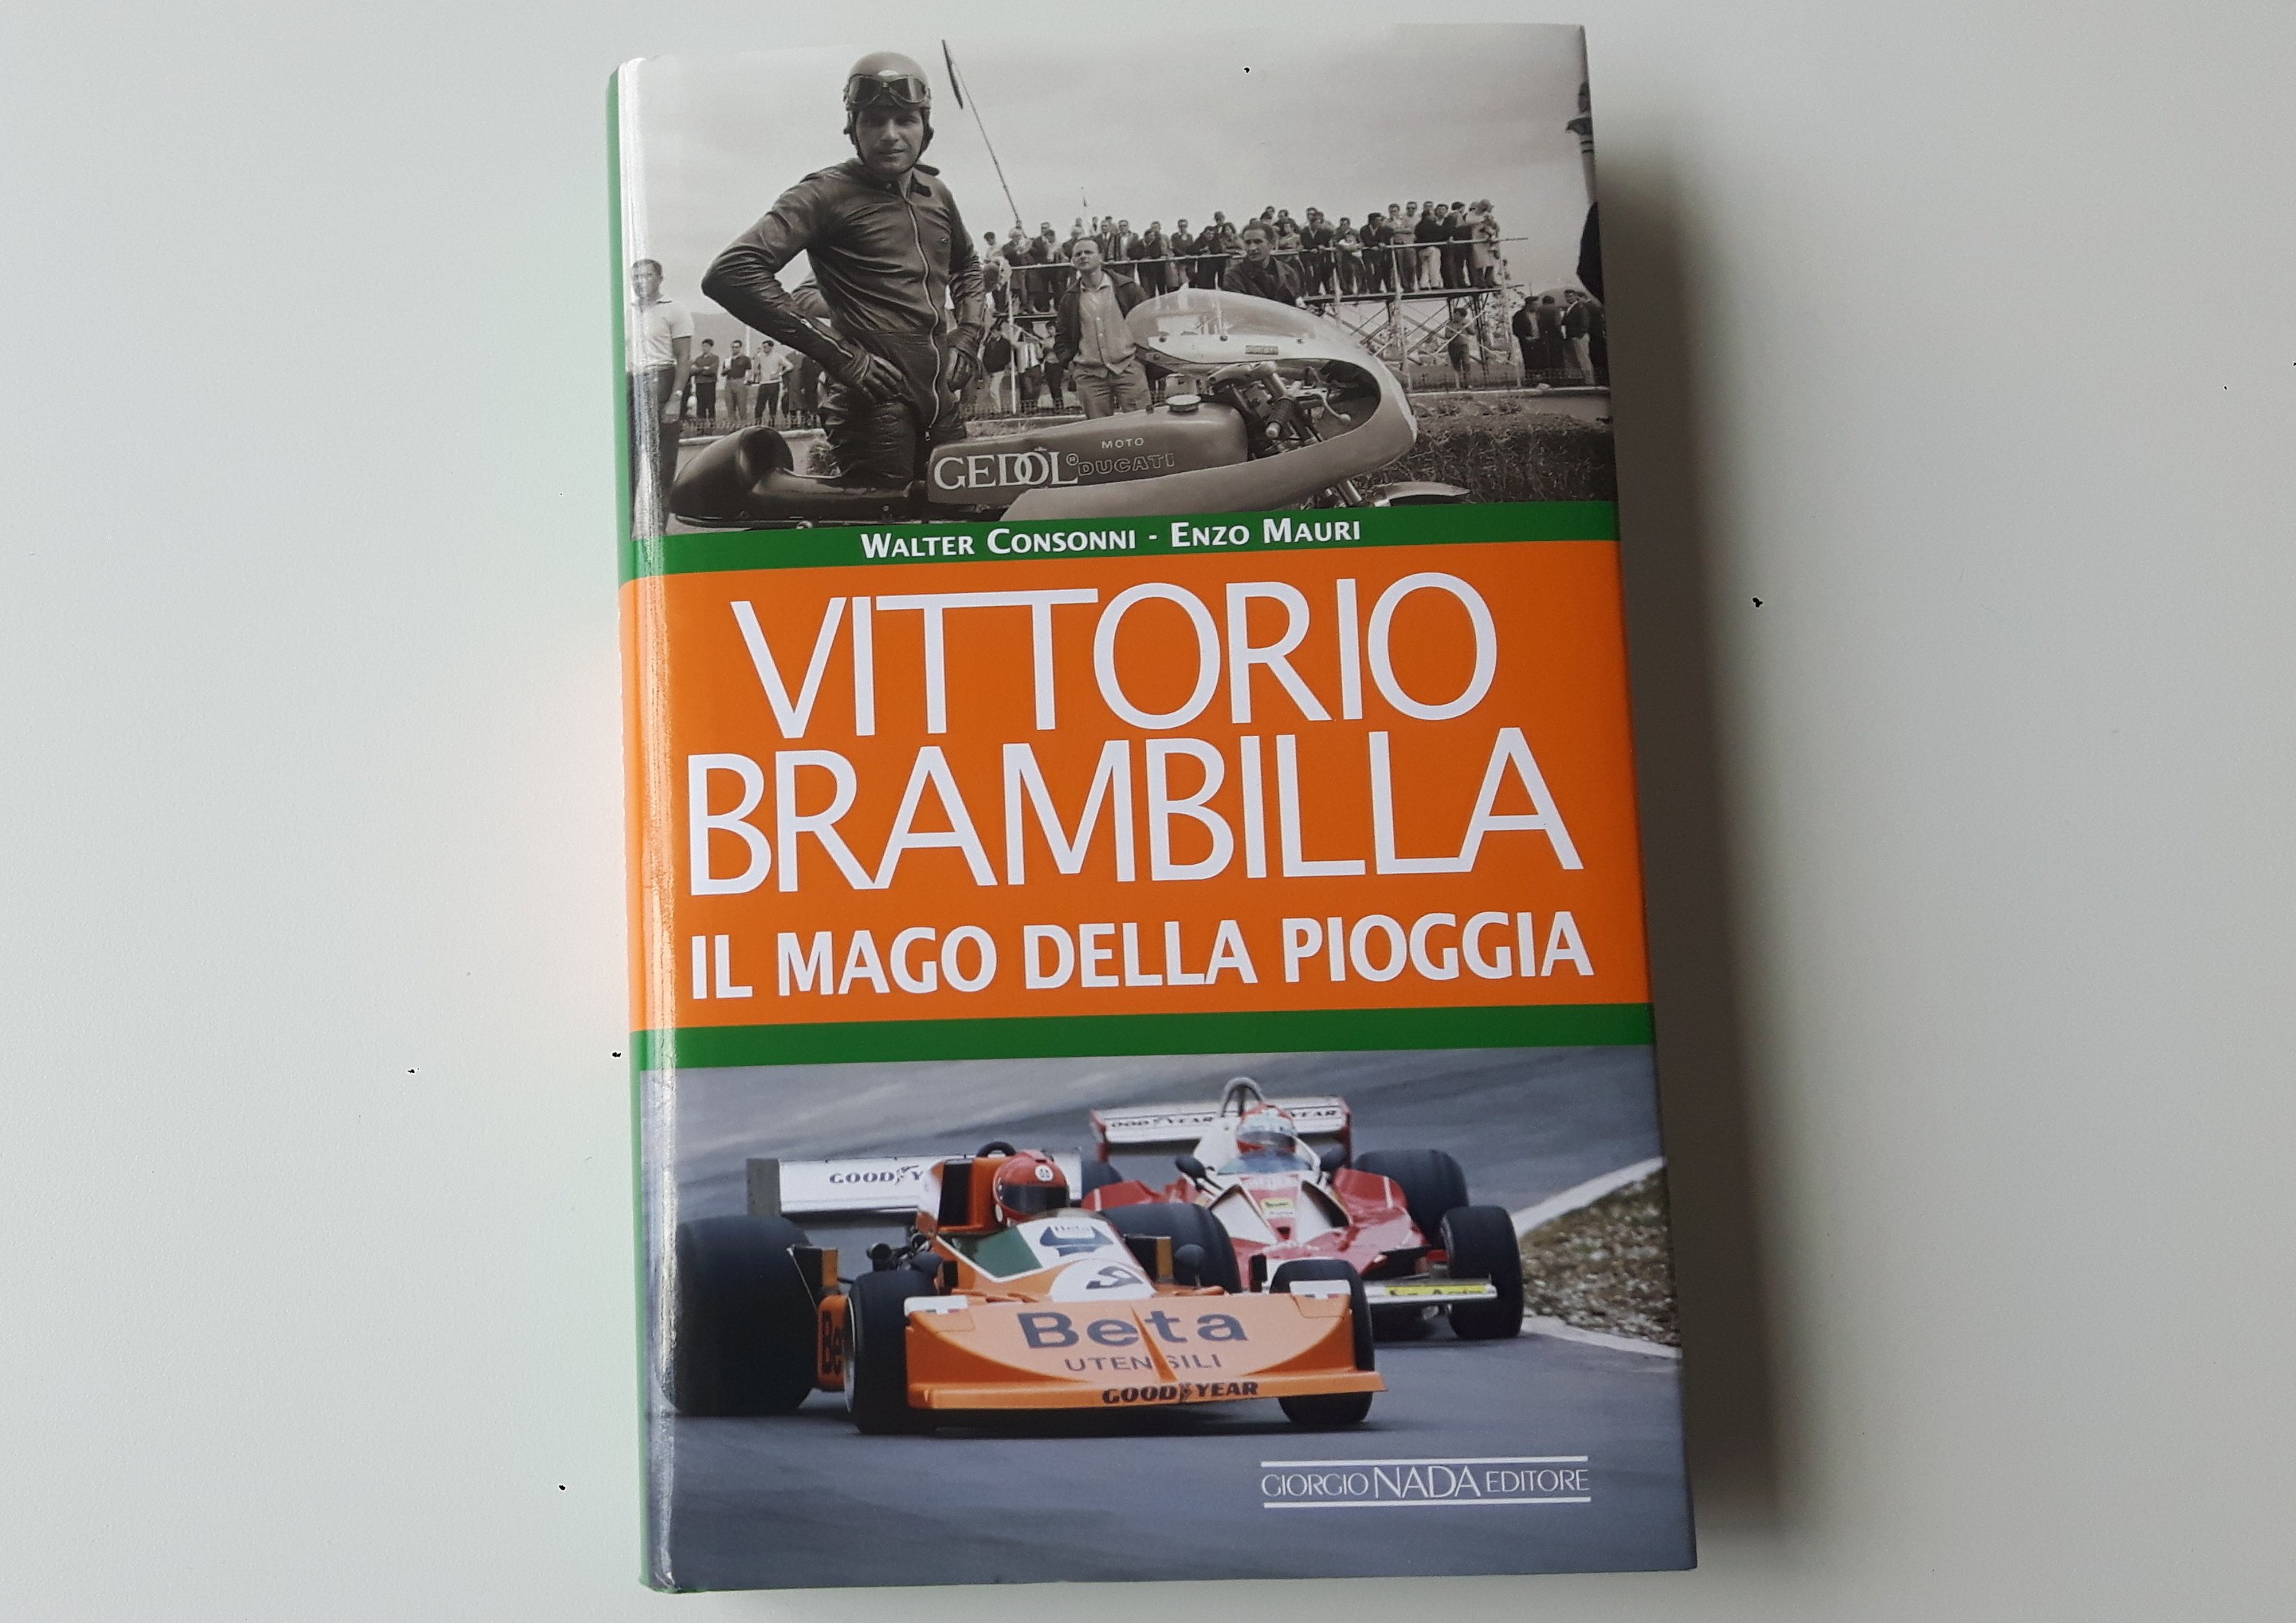 Vittorio Brambilla, &ldquo;Il mago della pioggia&rdquo;. La recensione